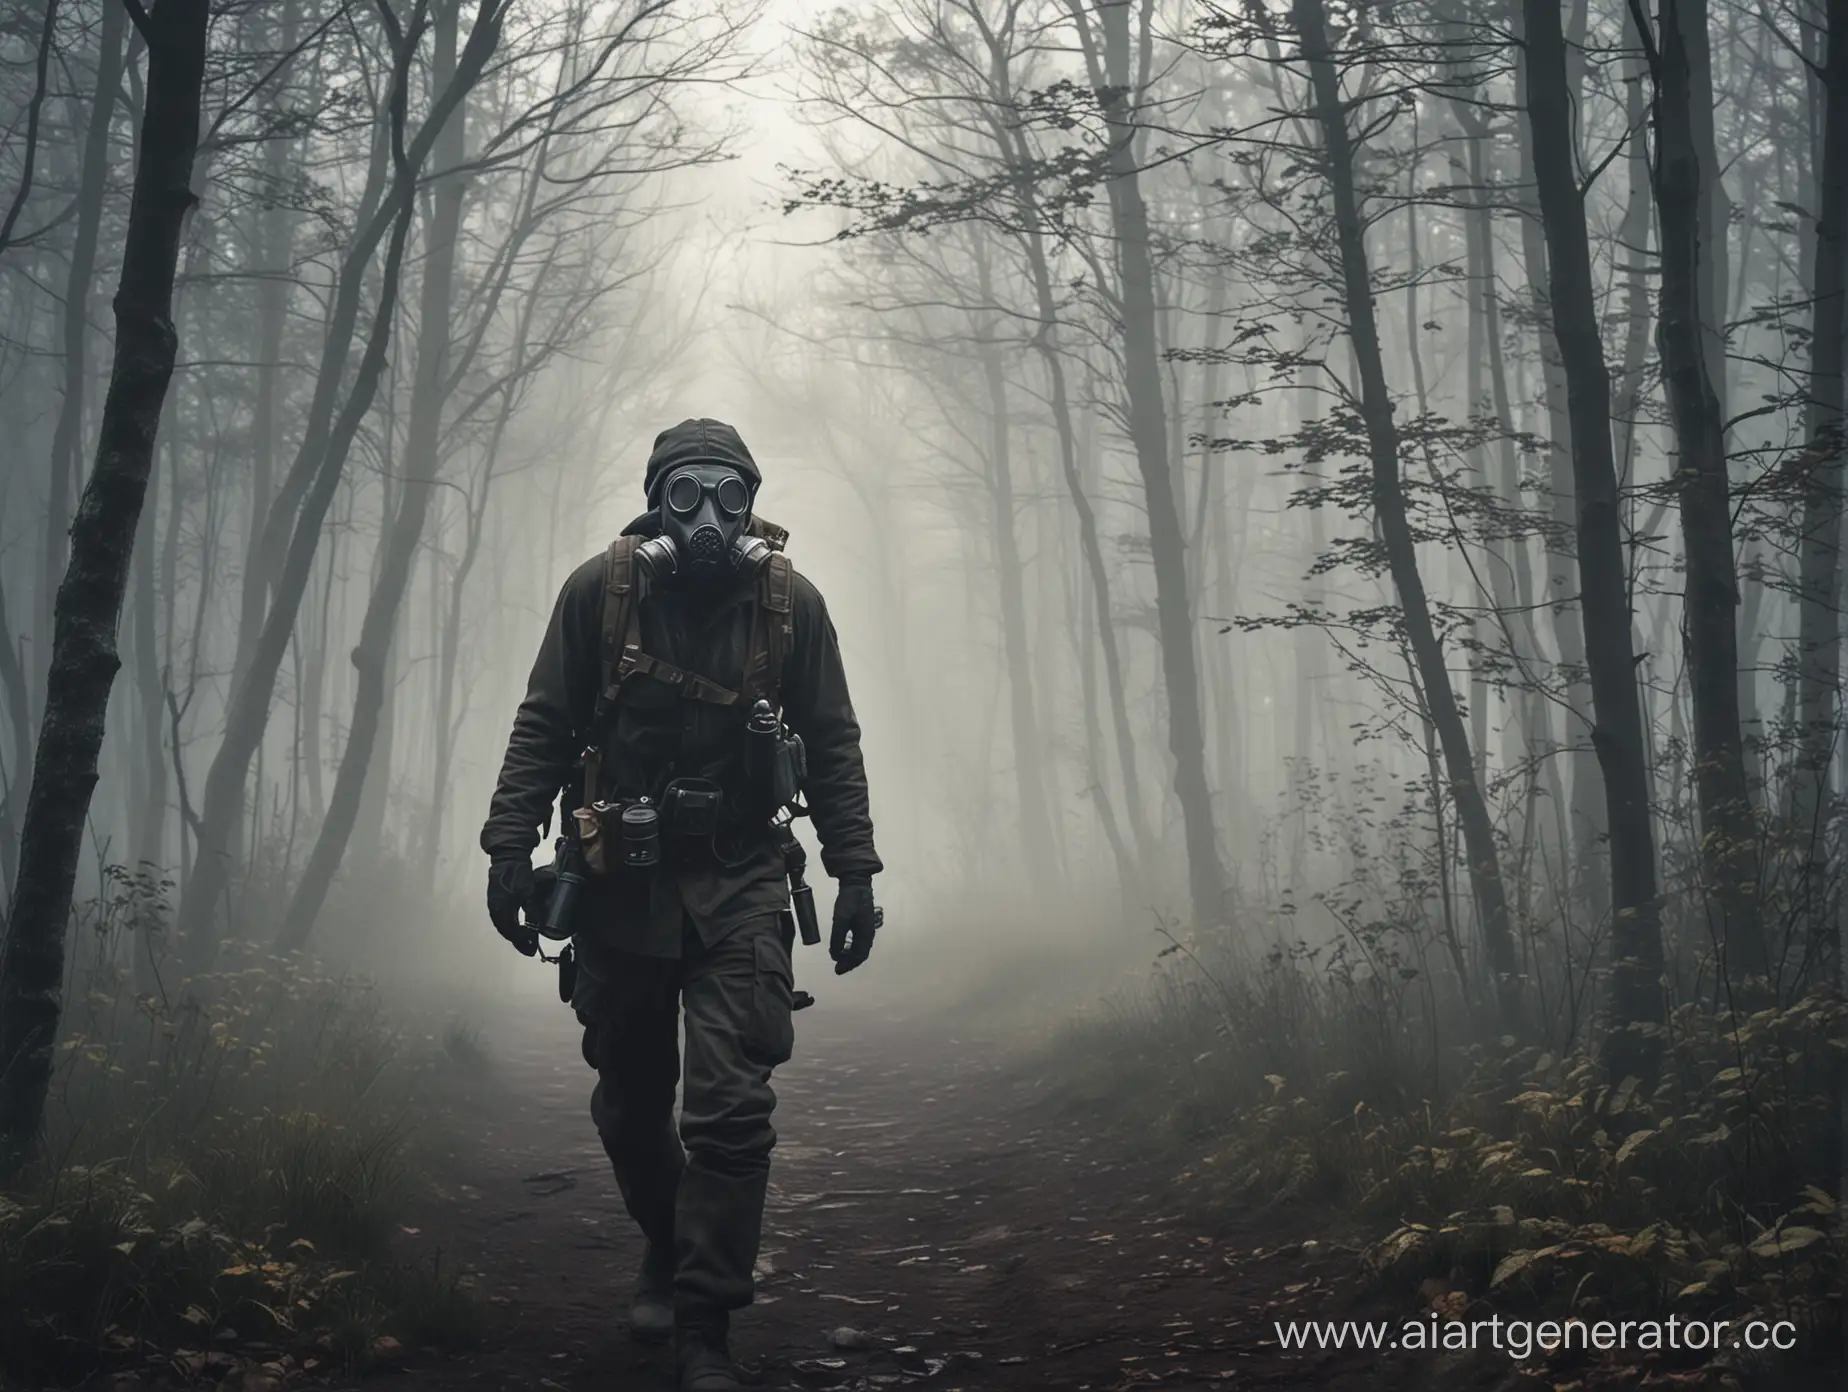 Нужна картинка по игре STALKER, на которой человек в противогазе идёт через лес с туманом ночью